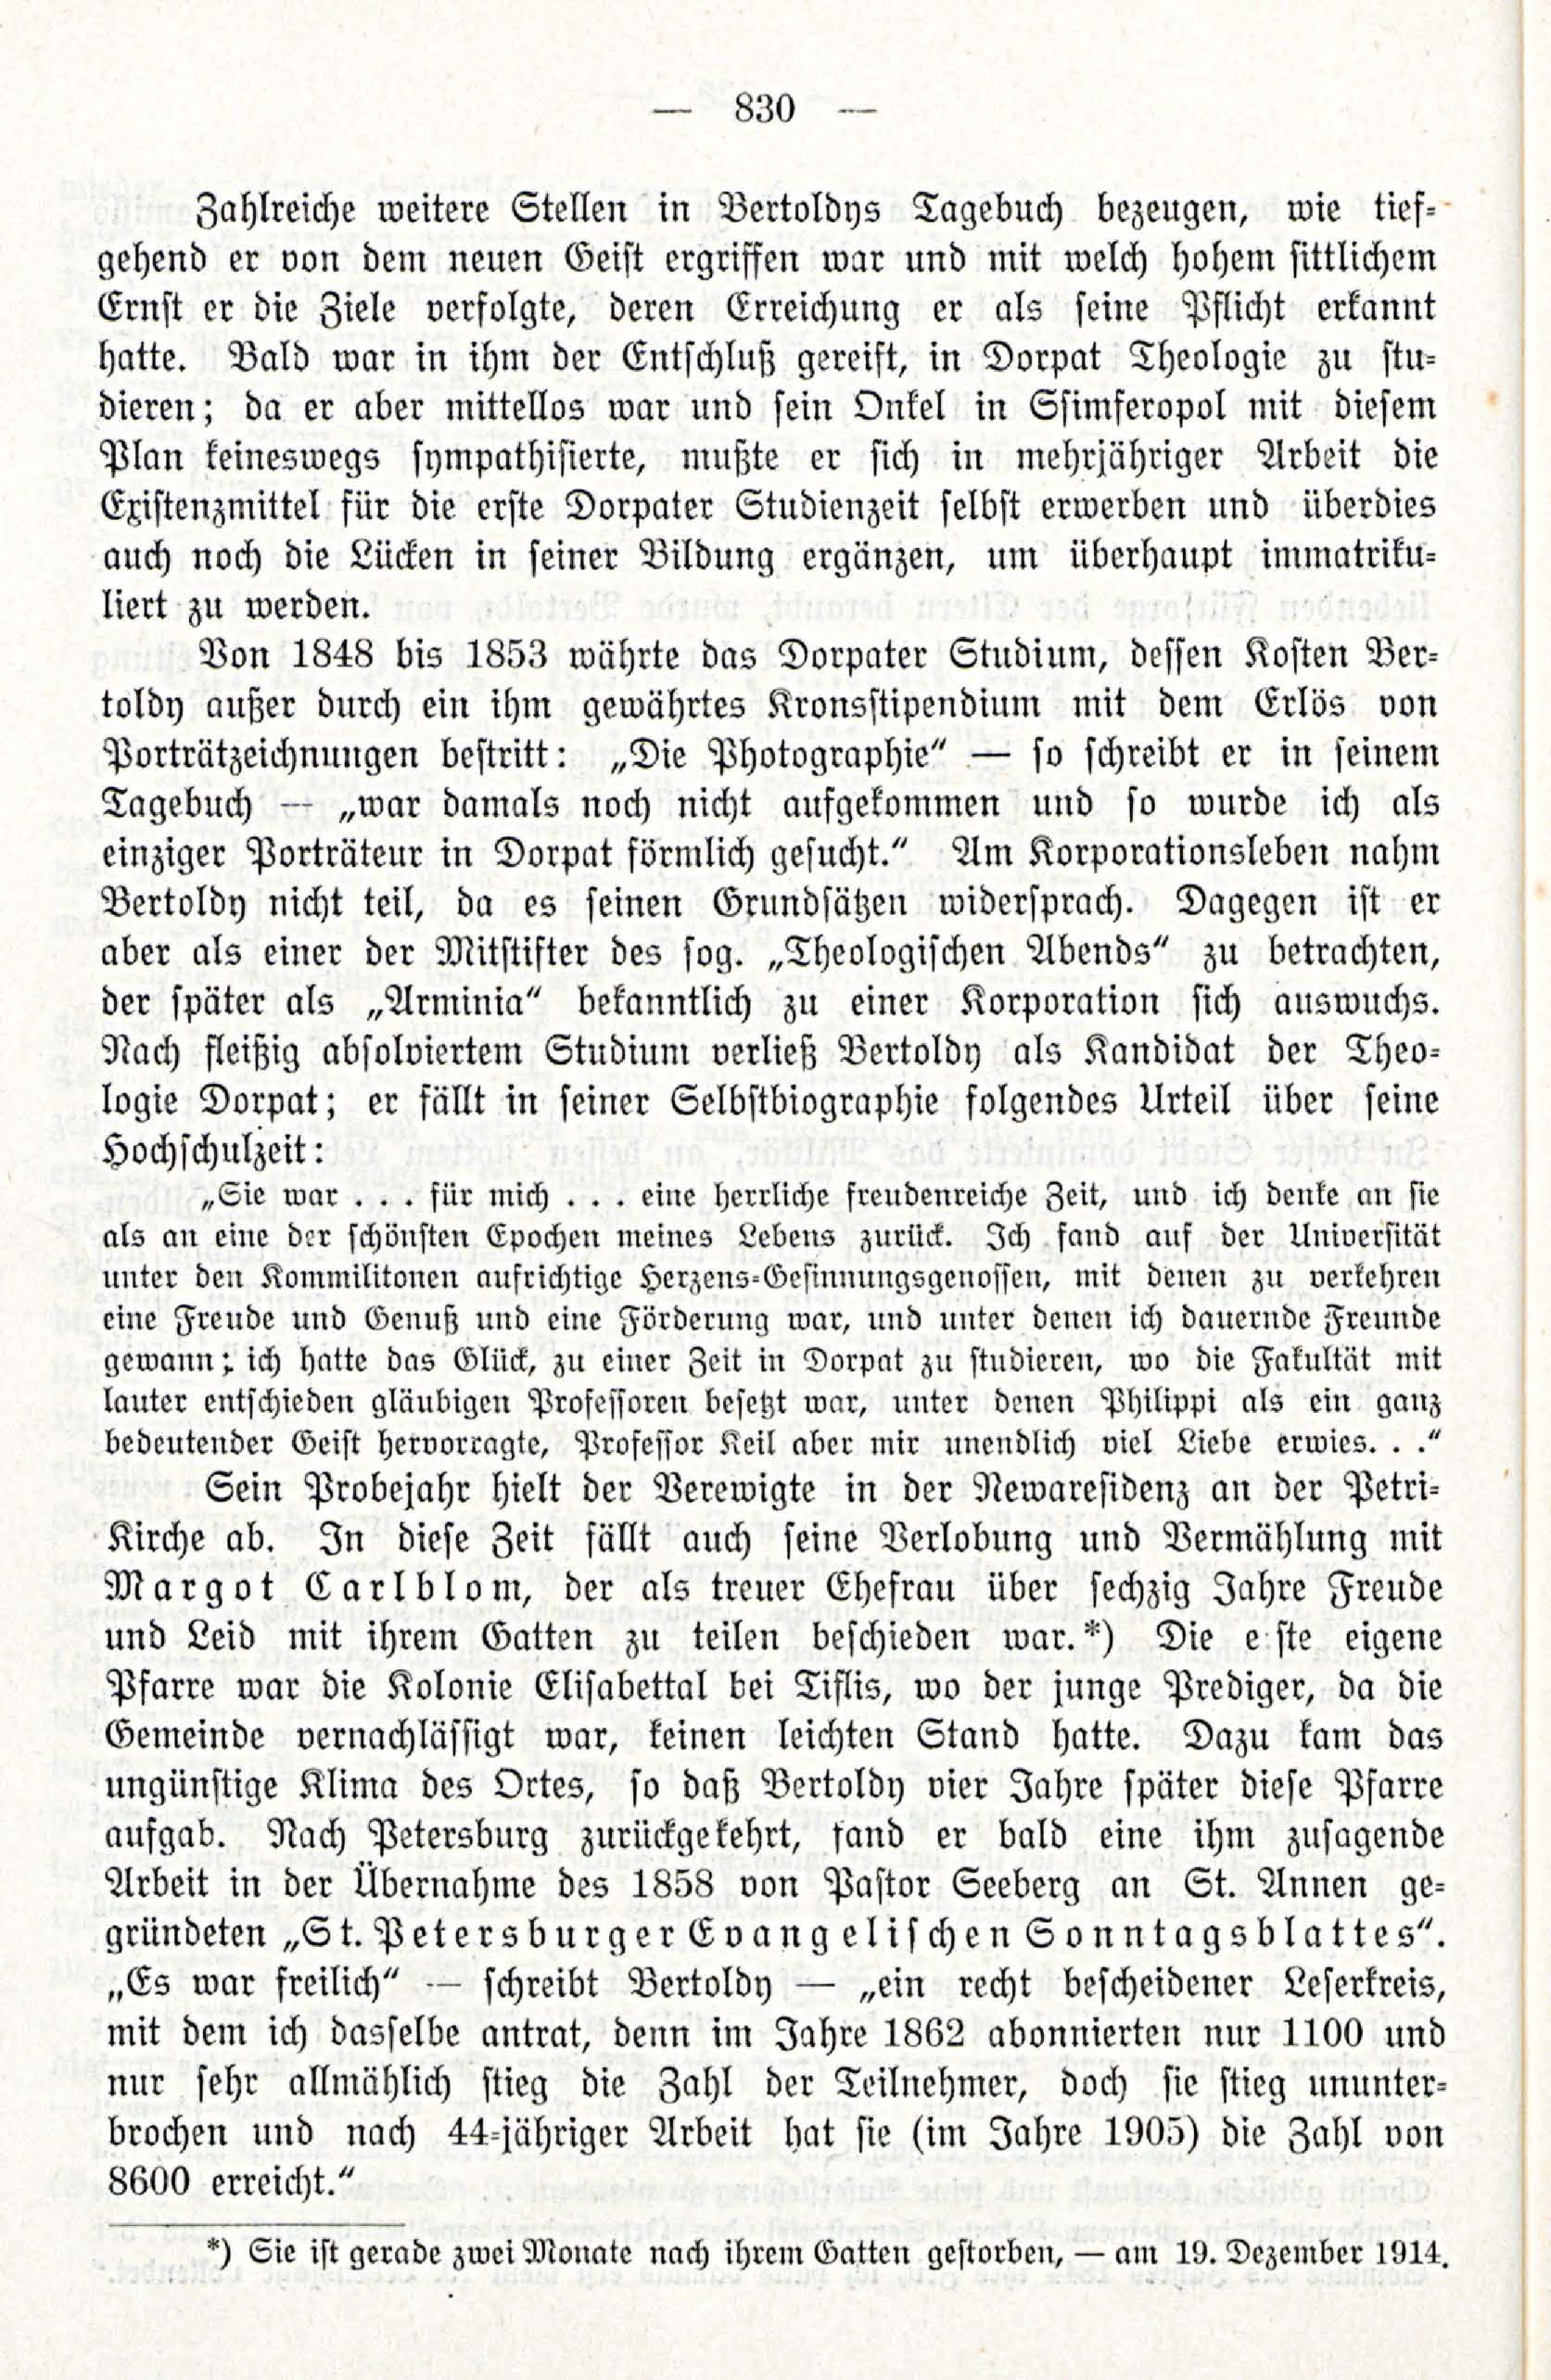 Deutsche Monatsschrift für Russland [3/12] (1914) | 46. (830) Main body of text